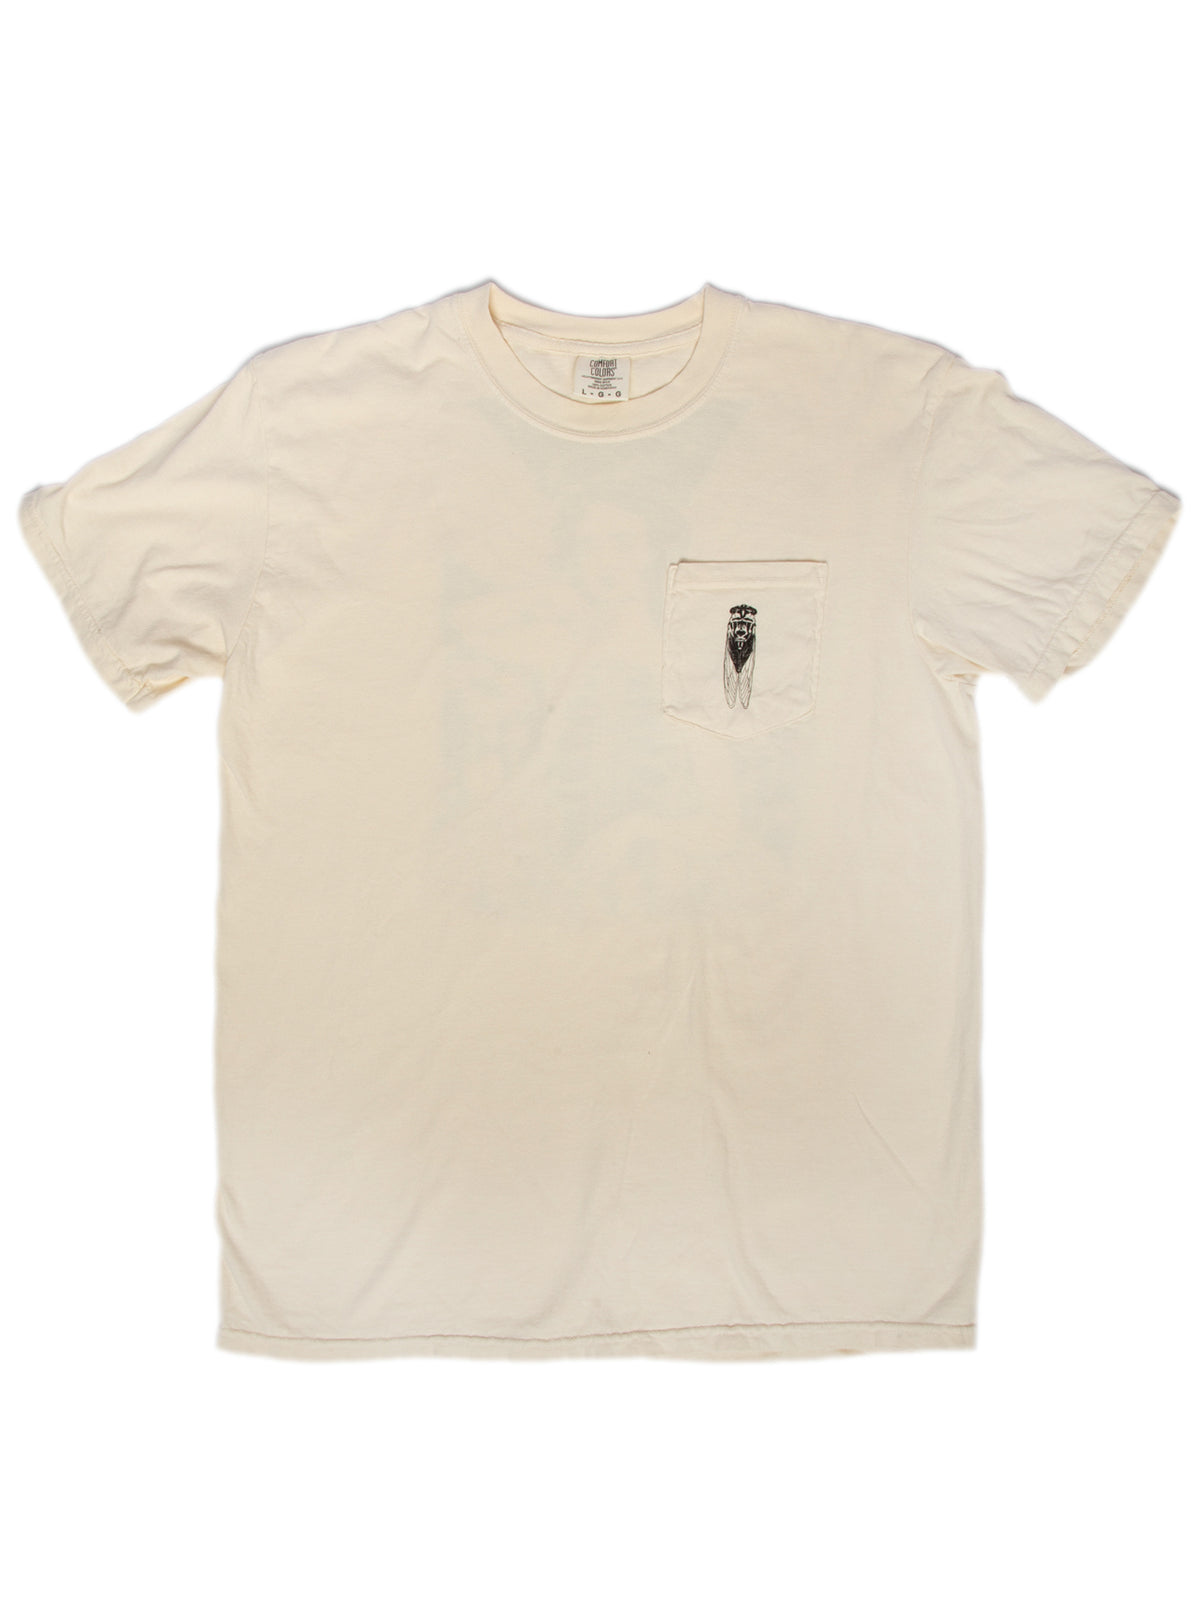 Cicada Summer Shirt by Brittany Bernstrom